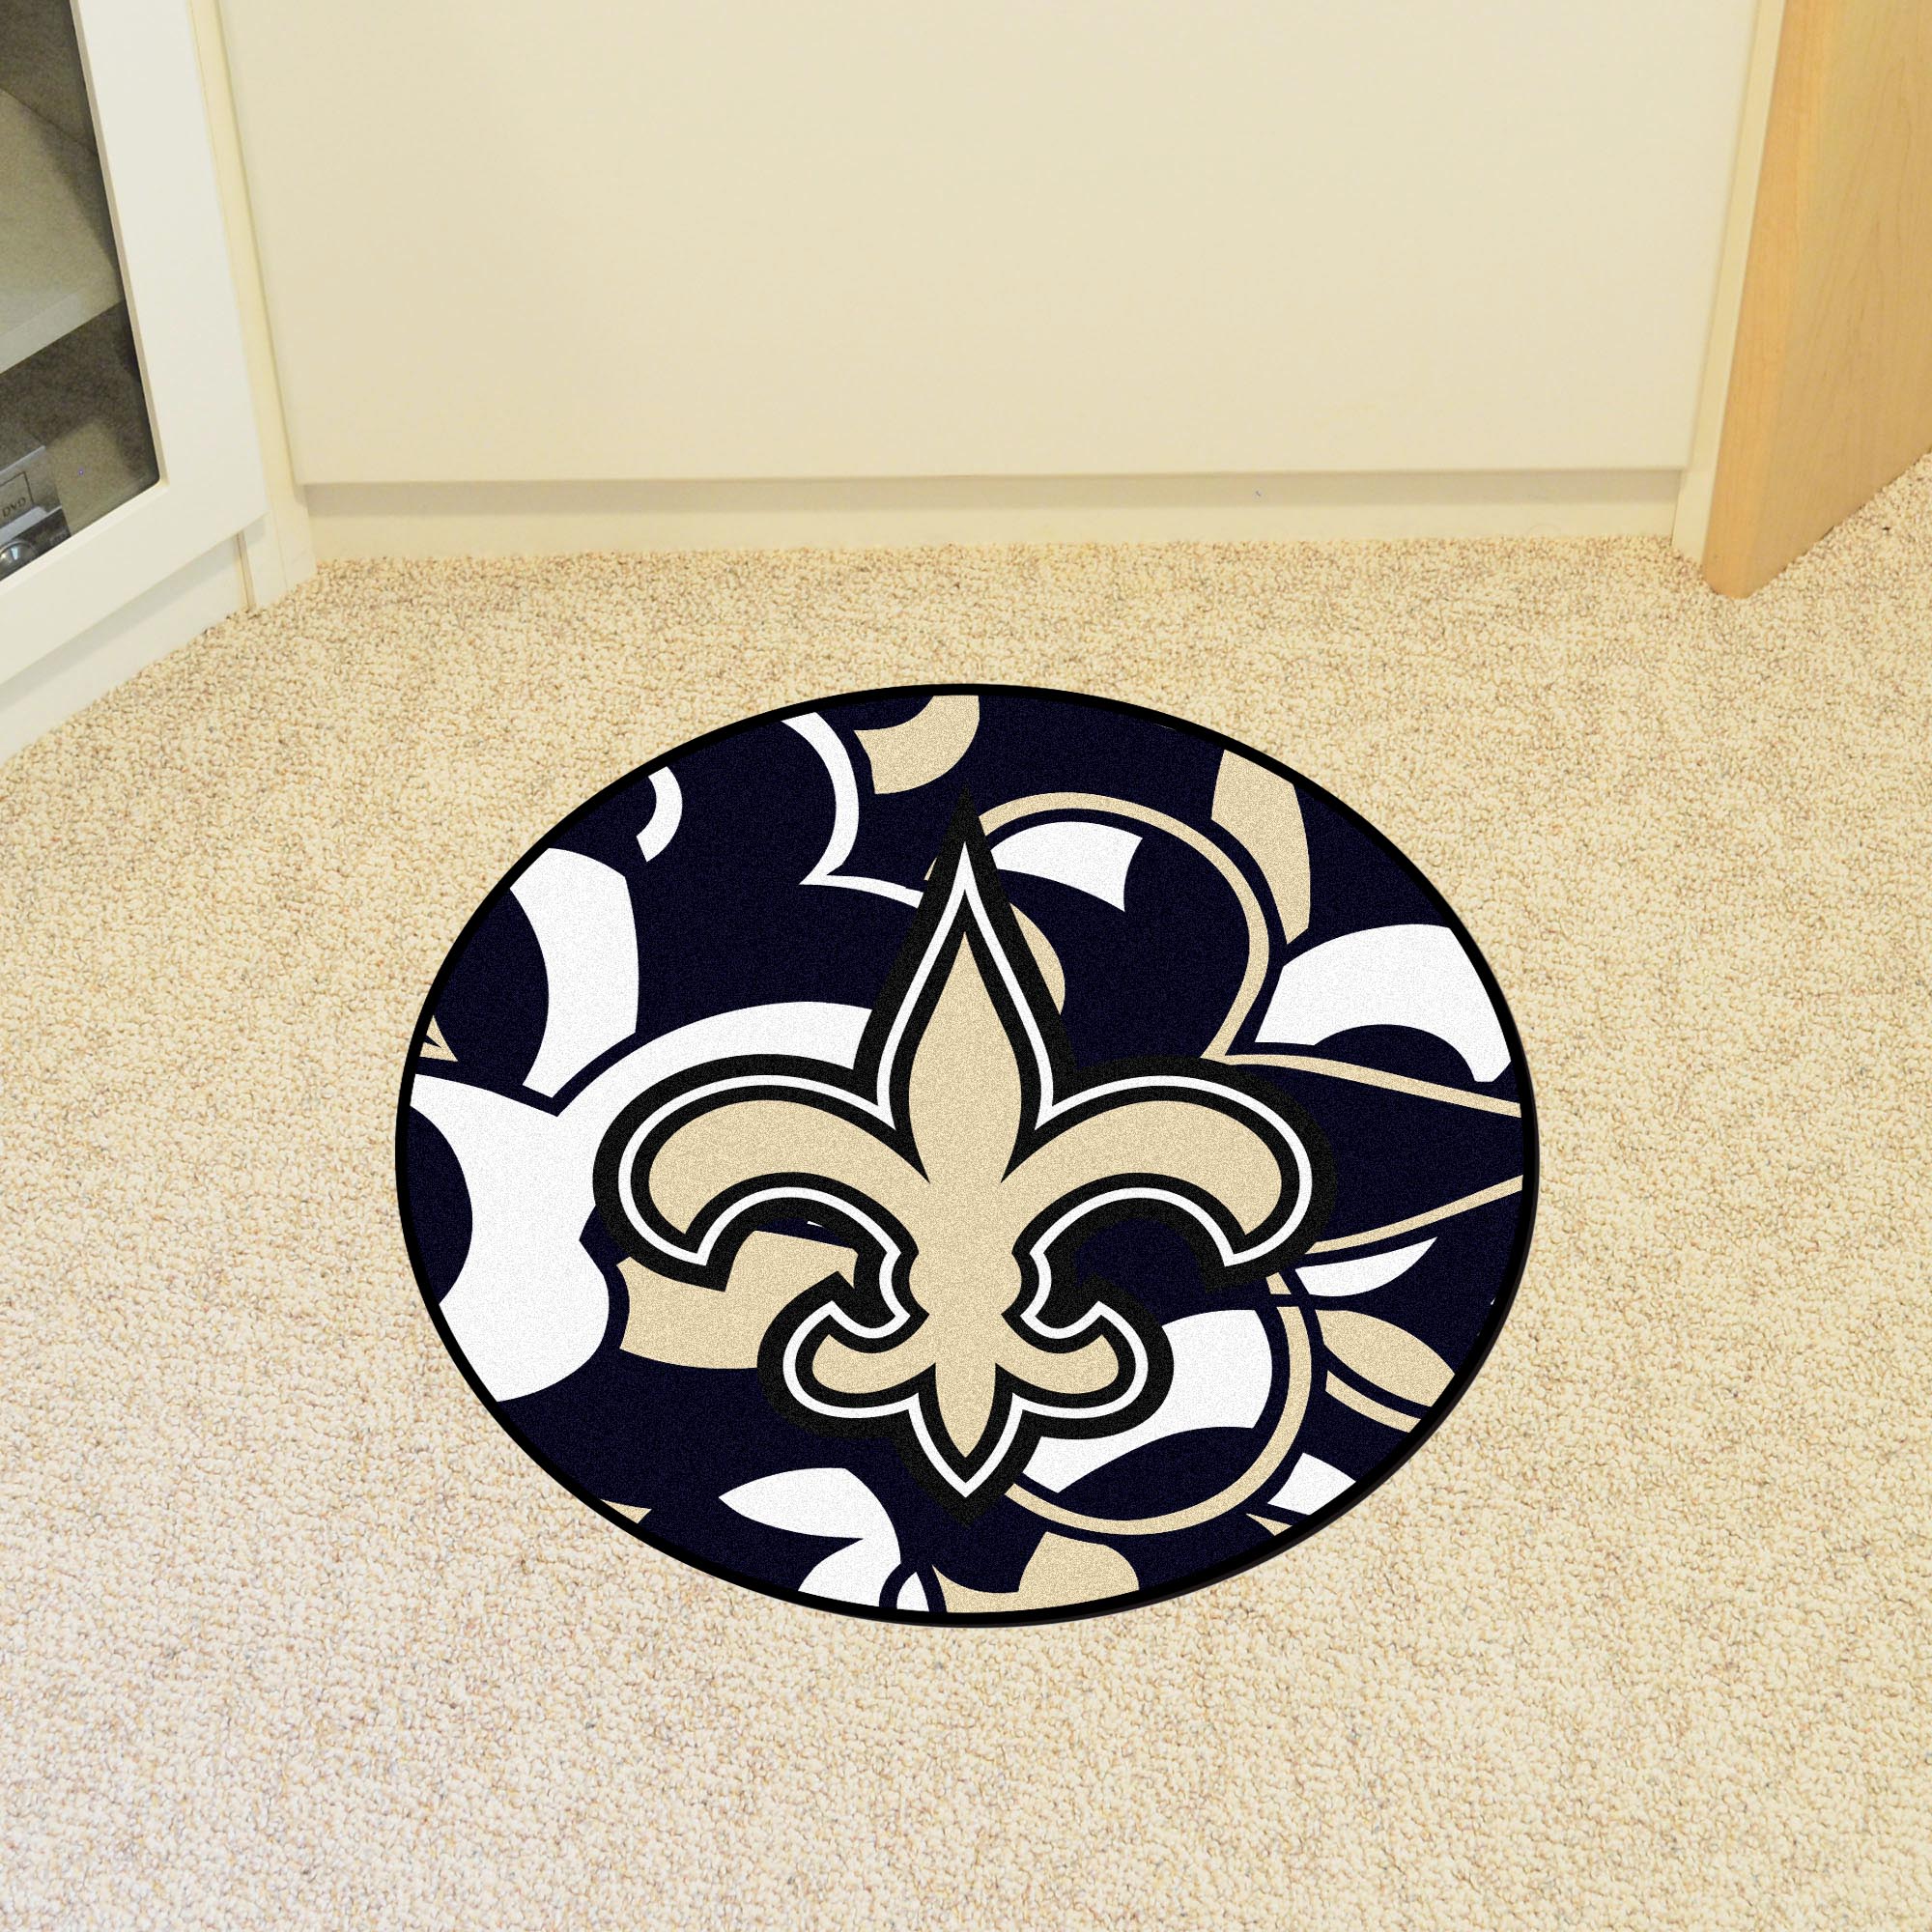 New Orleans Saints Quick Snap Roundel Mat – 27”